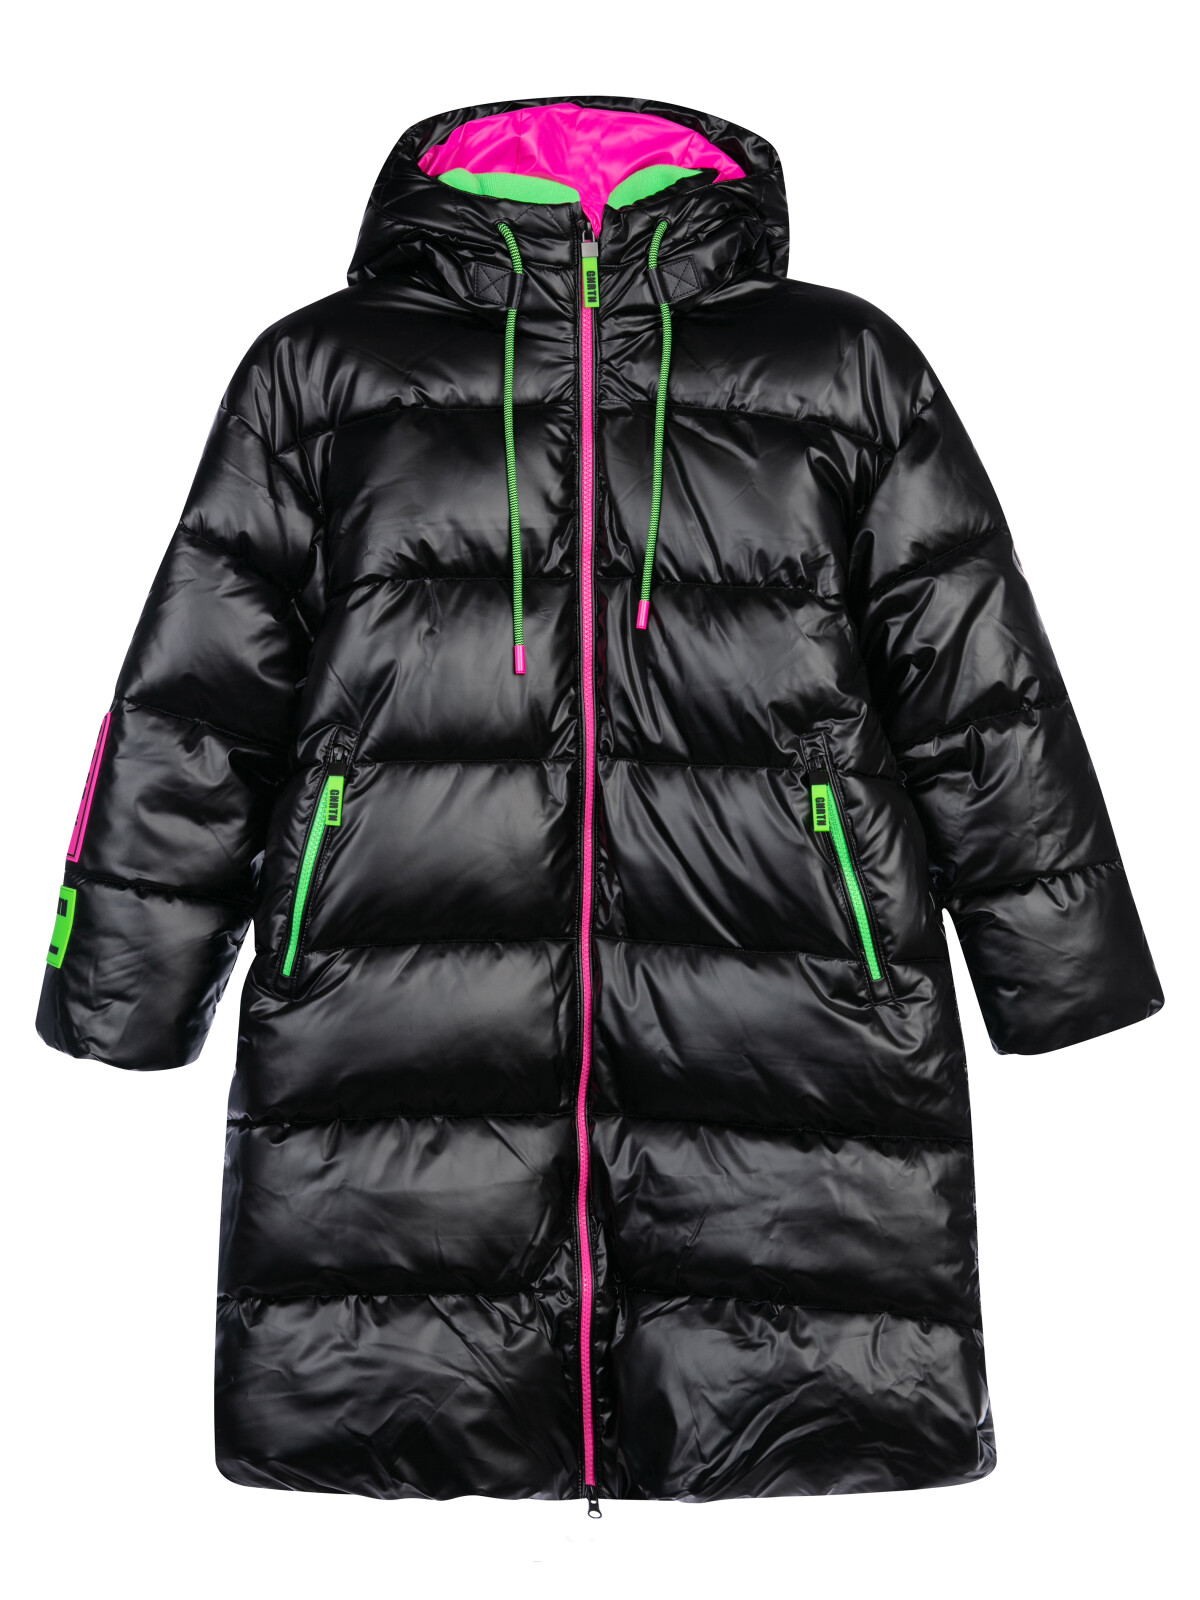 Пальто текстильное с полиуретановым покрытием для девочек PlayToday, черный,цветной, 158